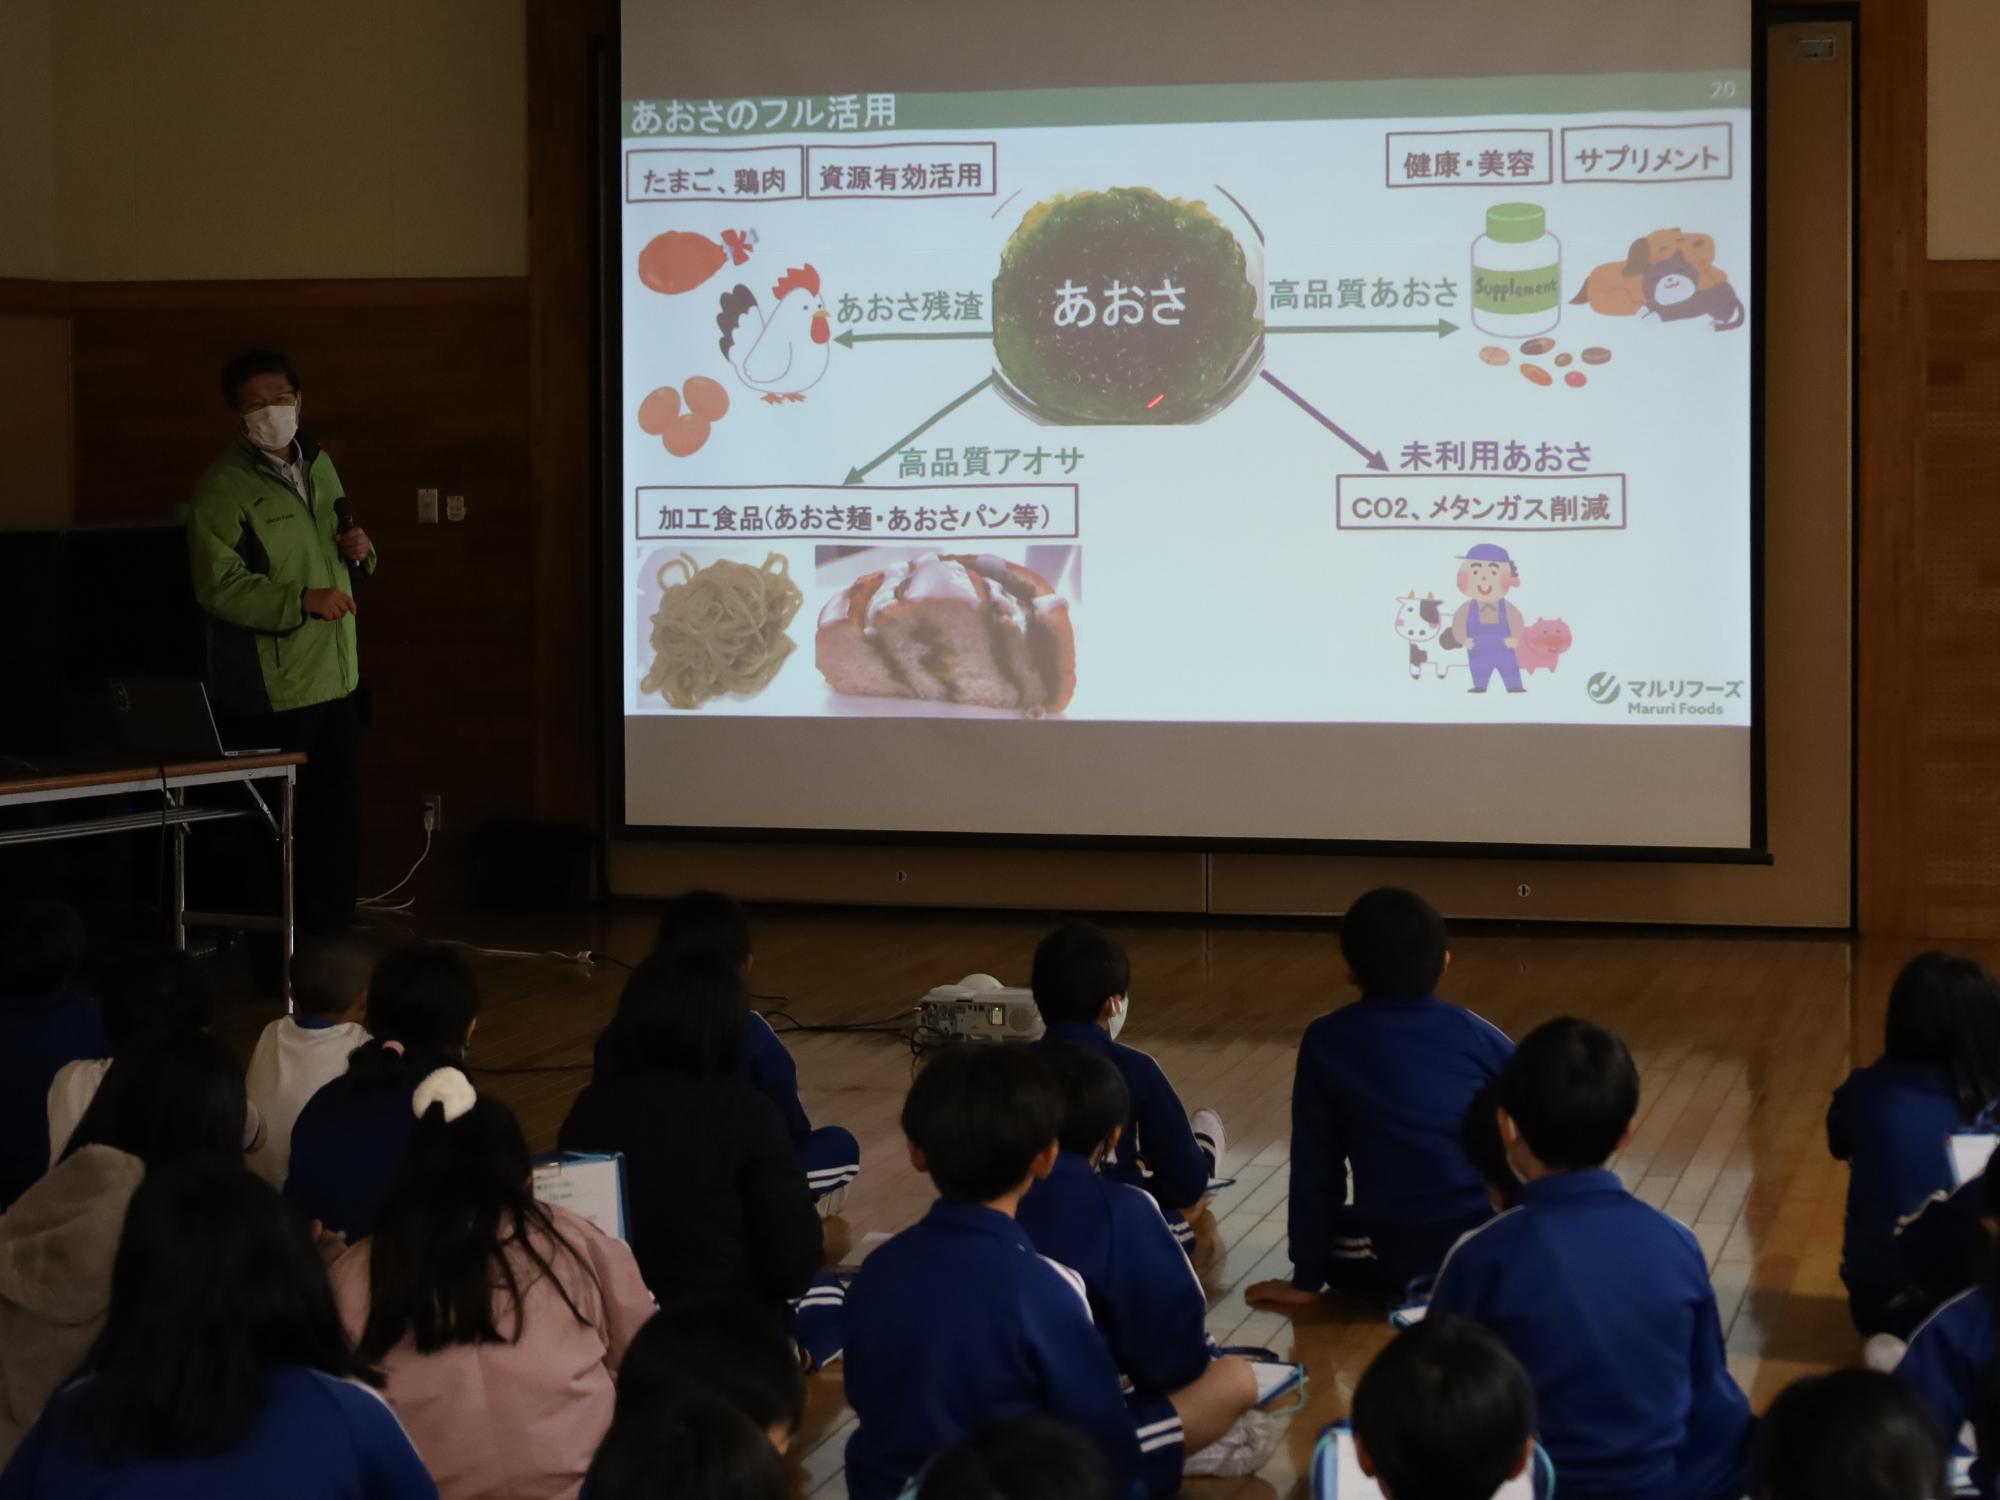 中村第二小学校食育授業で、講師からあおさに関する説明を受ける児童らの様子